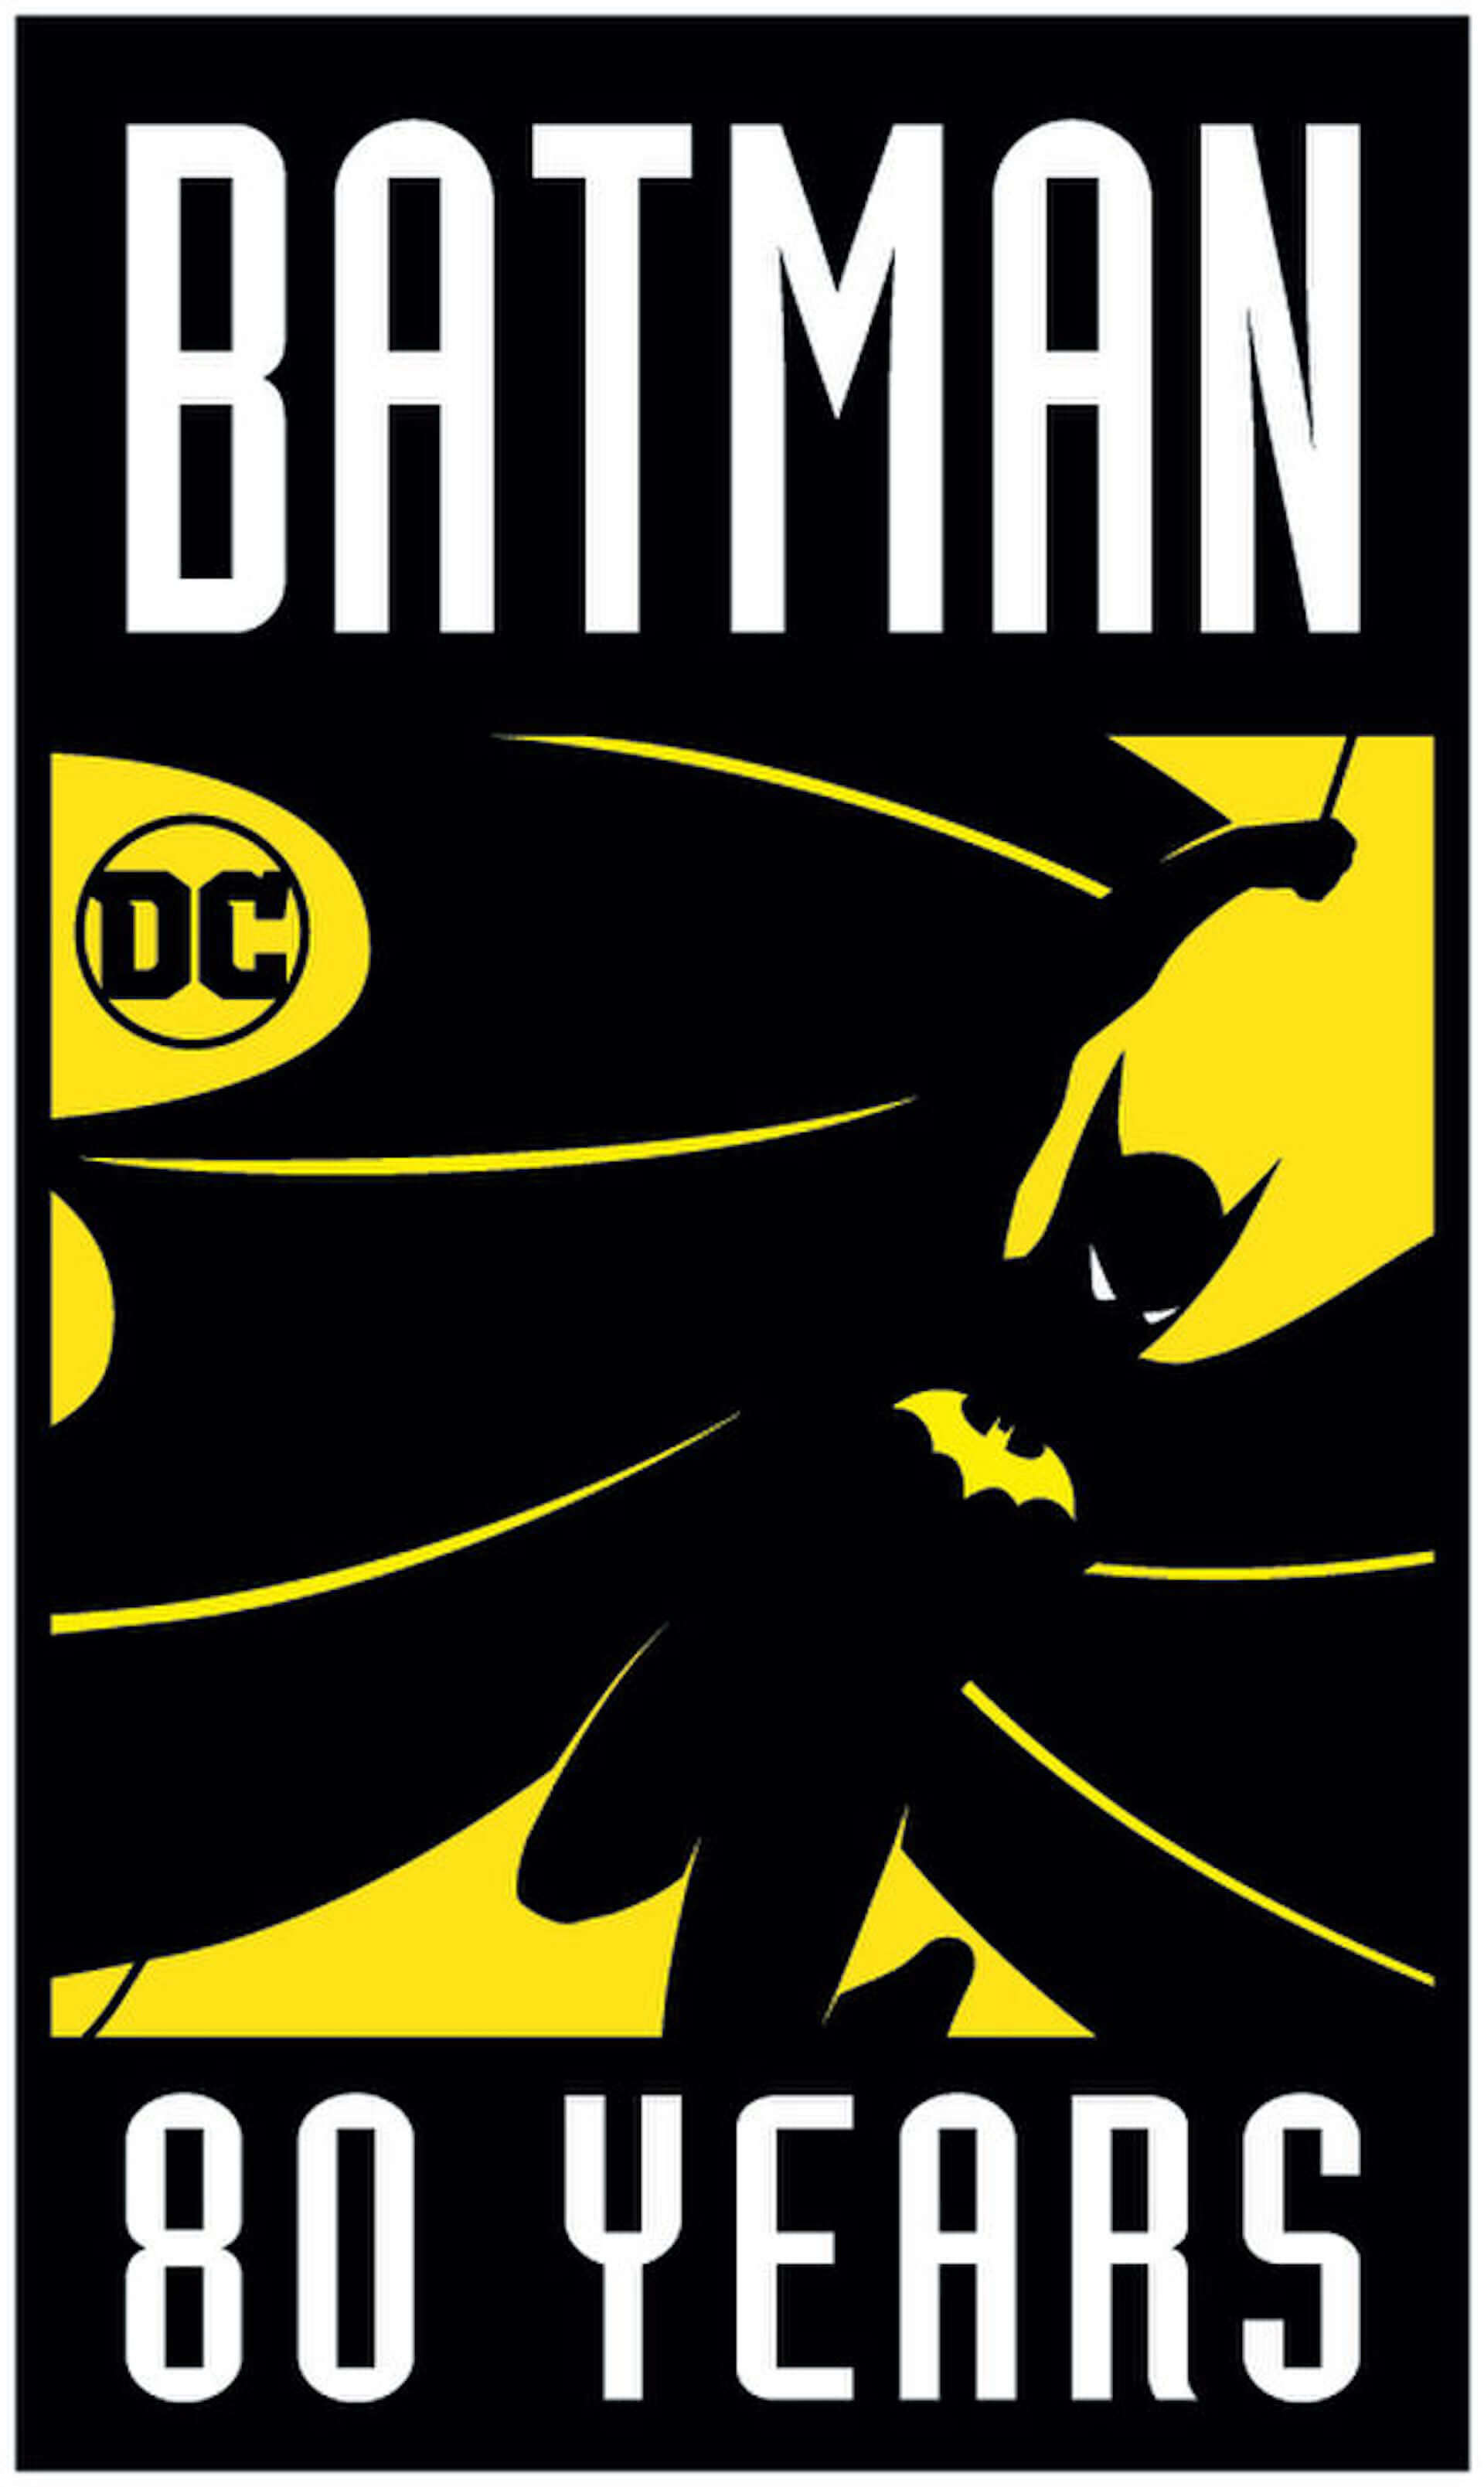 バットマン80周年記念 バットマン映画8作品が各局で放送 渋谷では バットシグナル も照射 コラボグッズ販売も Qetic